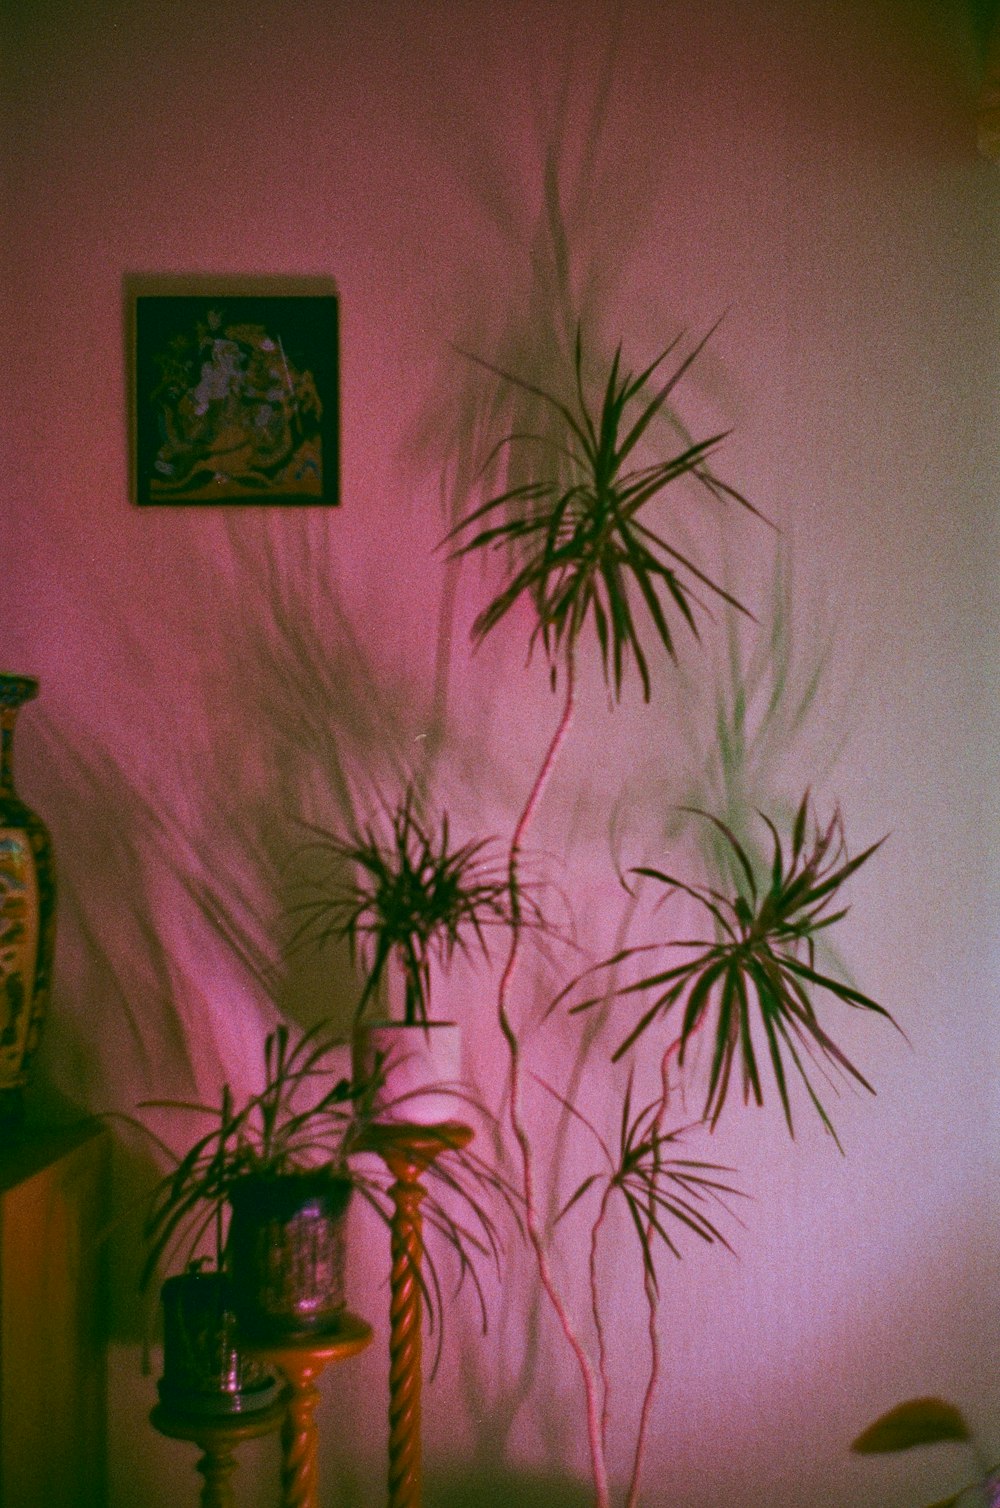 pianta di palma verde vicino al muro bianco